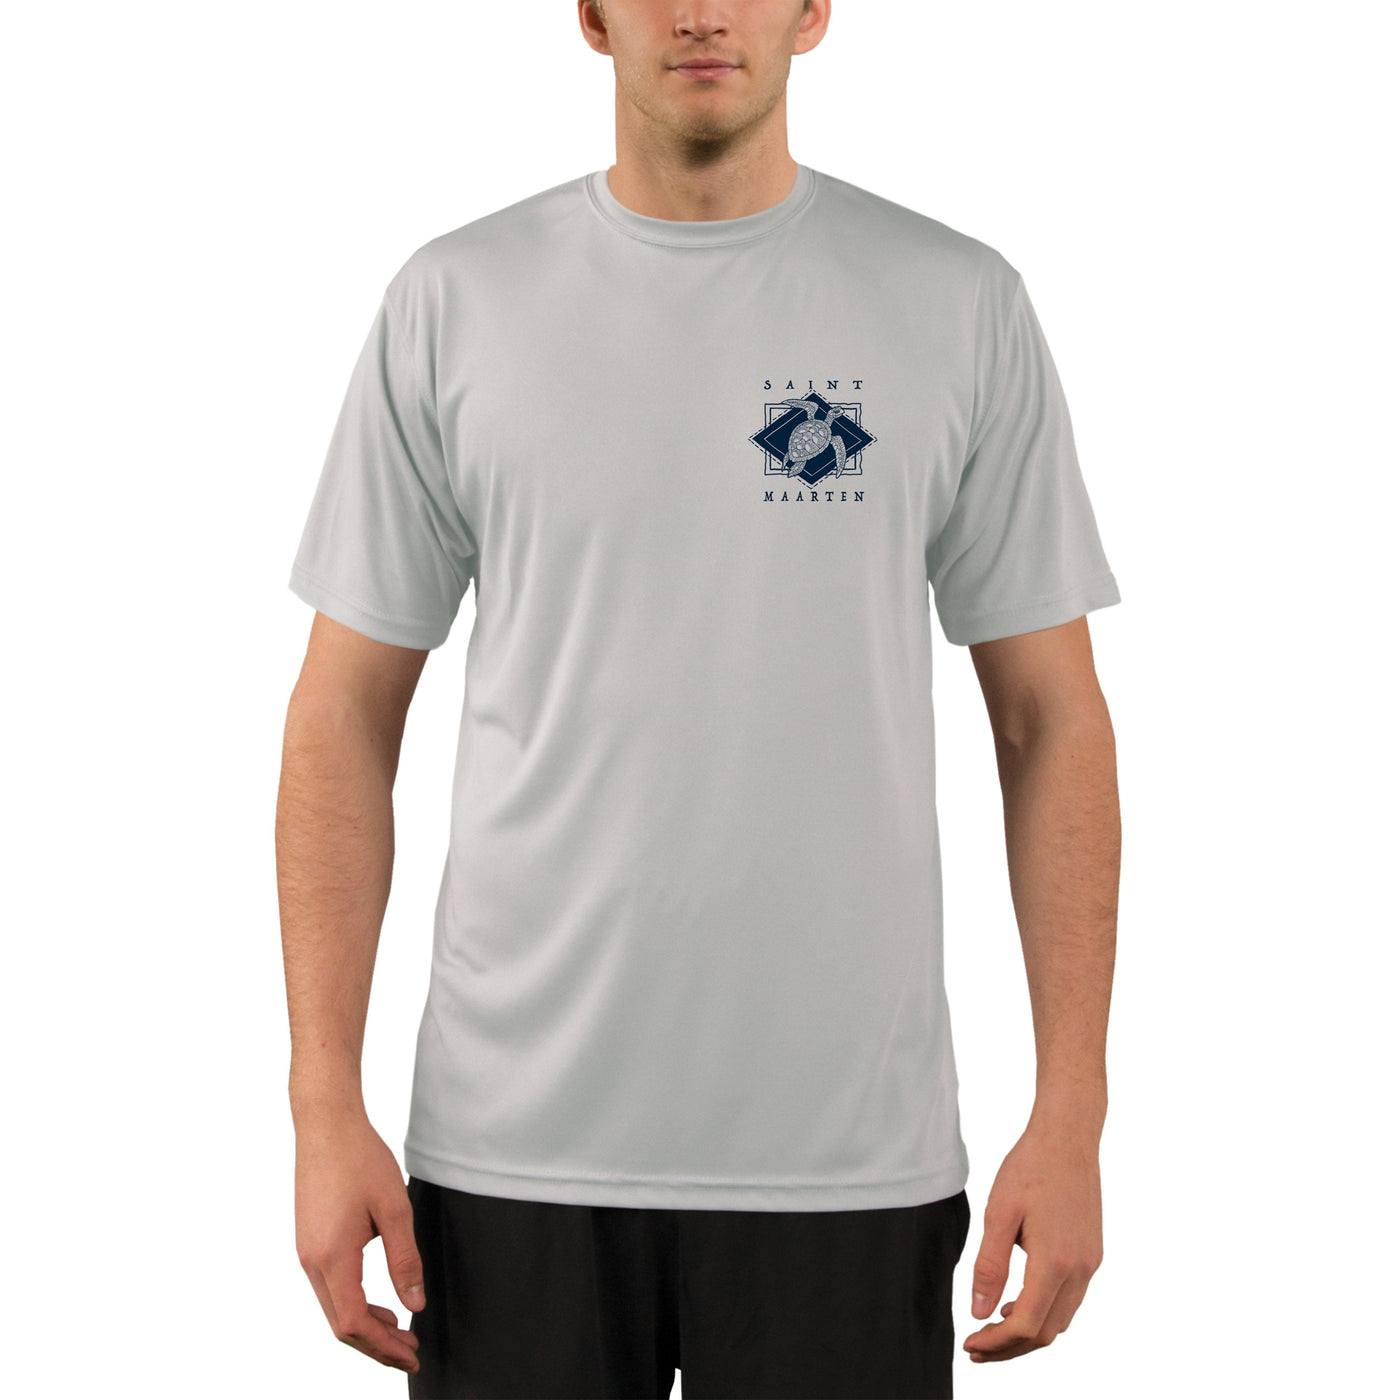 Coastal Quads Saint Maarten Men's UPF 50+ Short Sleeve T-shirt